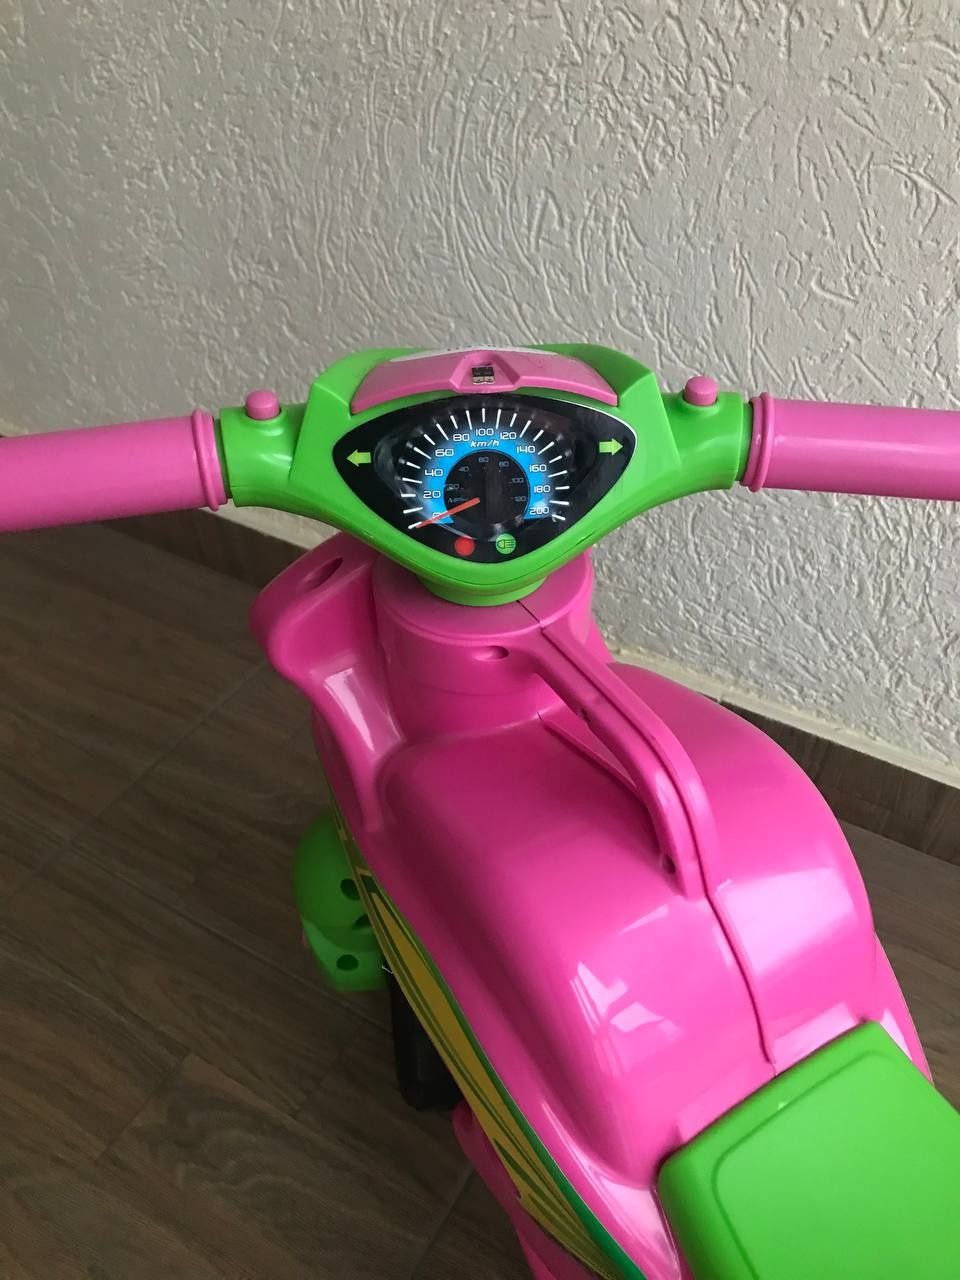 Дитячий мотоцикл для дівчинки